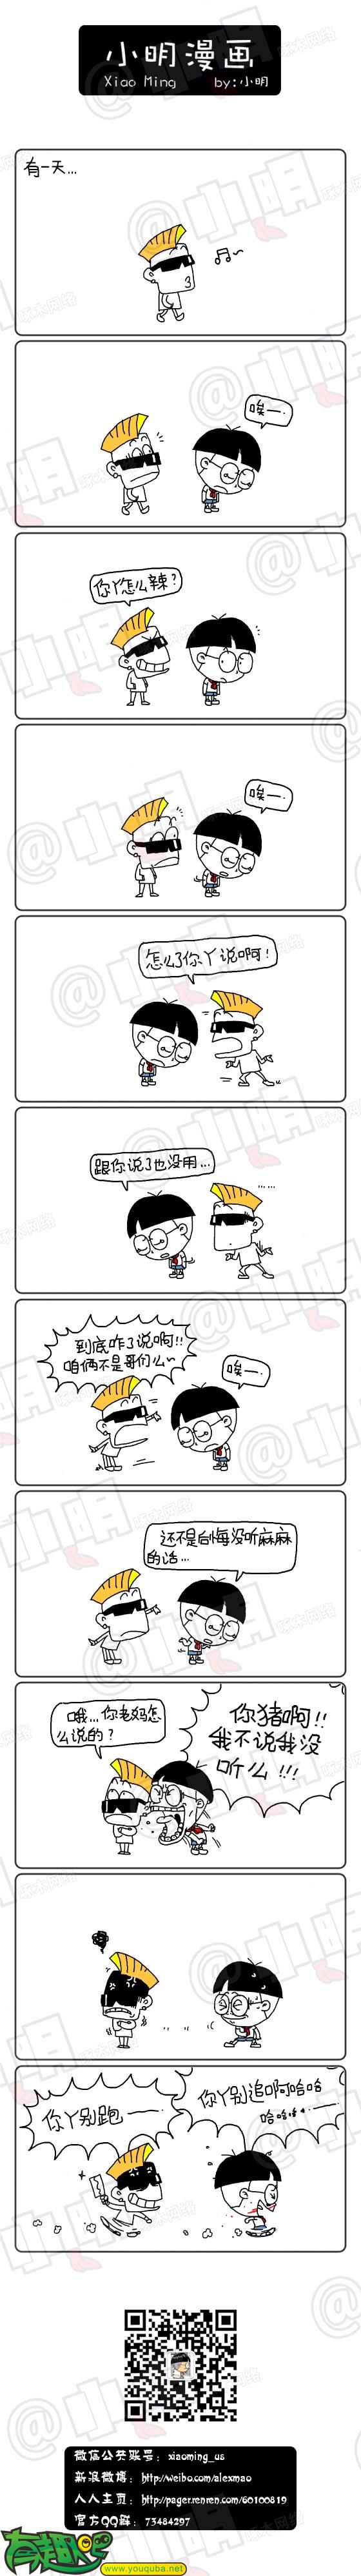 小明系列漫画:没听妈妈的话